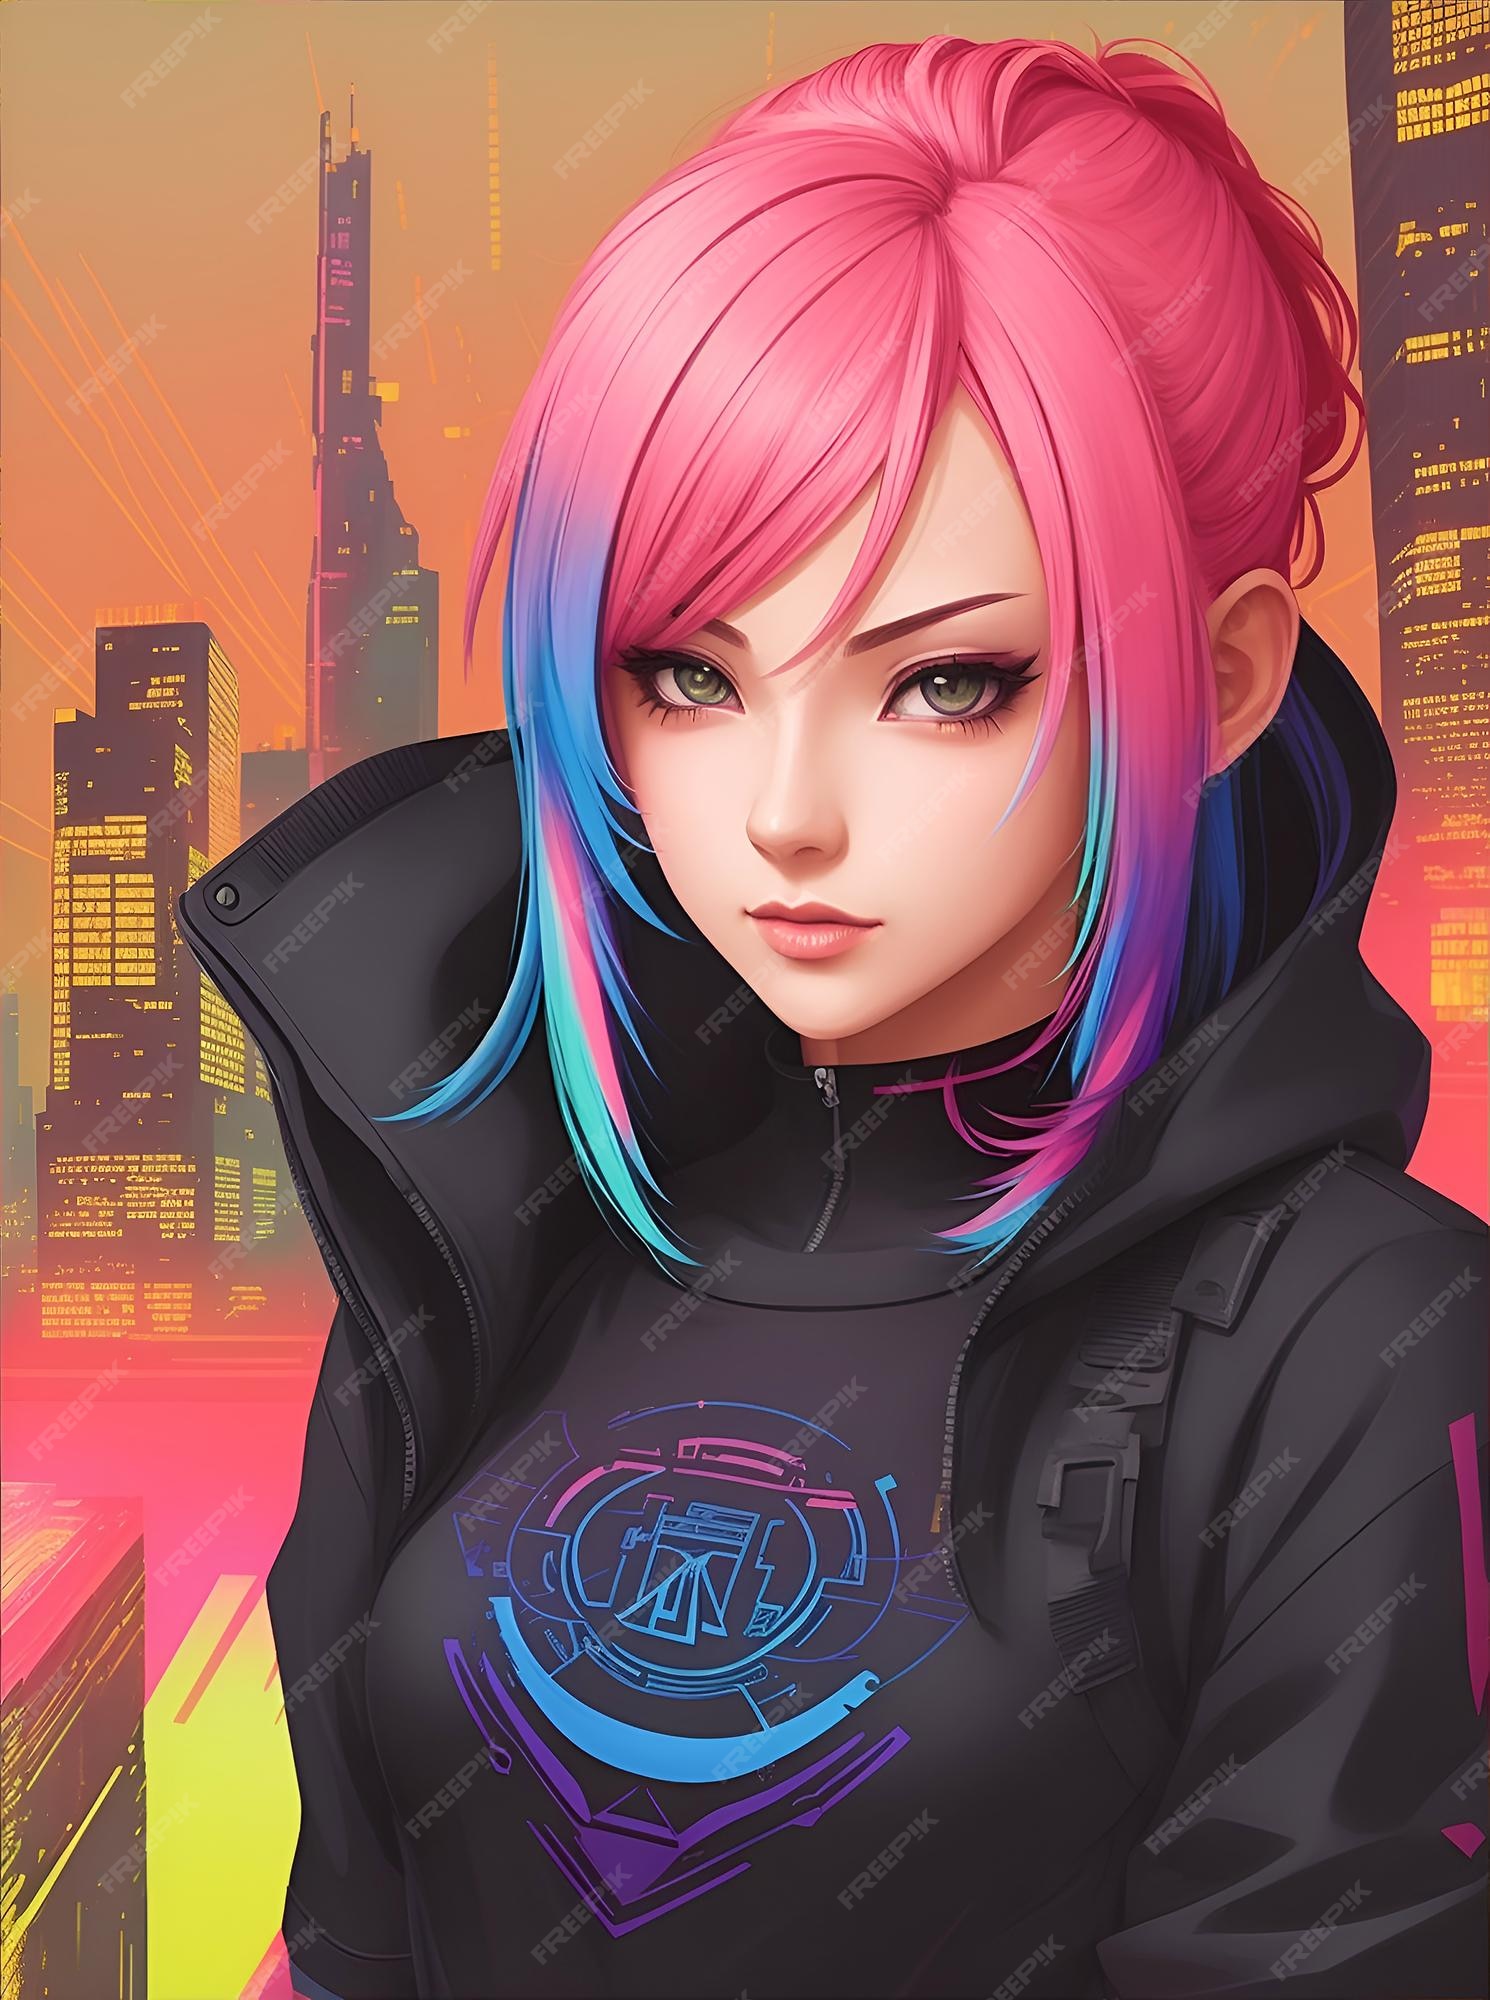 Personagem de anime moderno com cores vibrantes do estilo cyberpunk